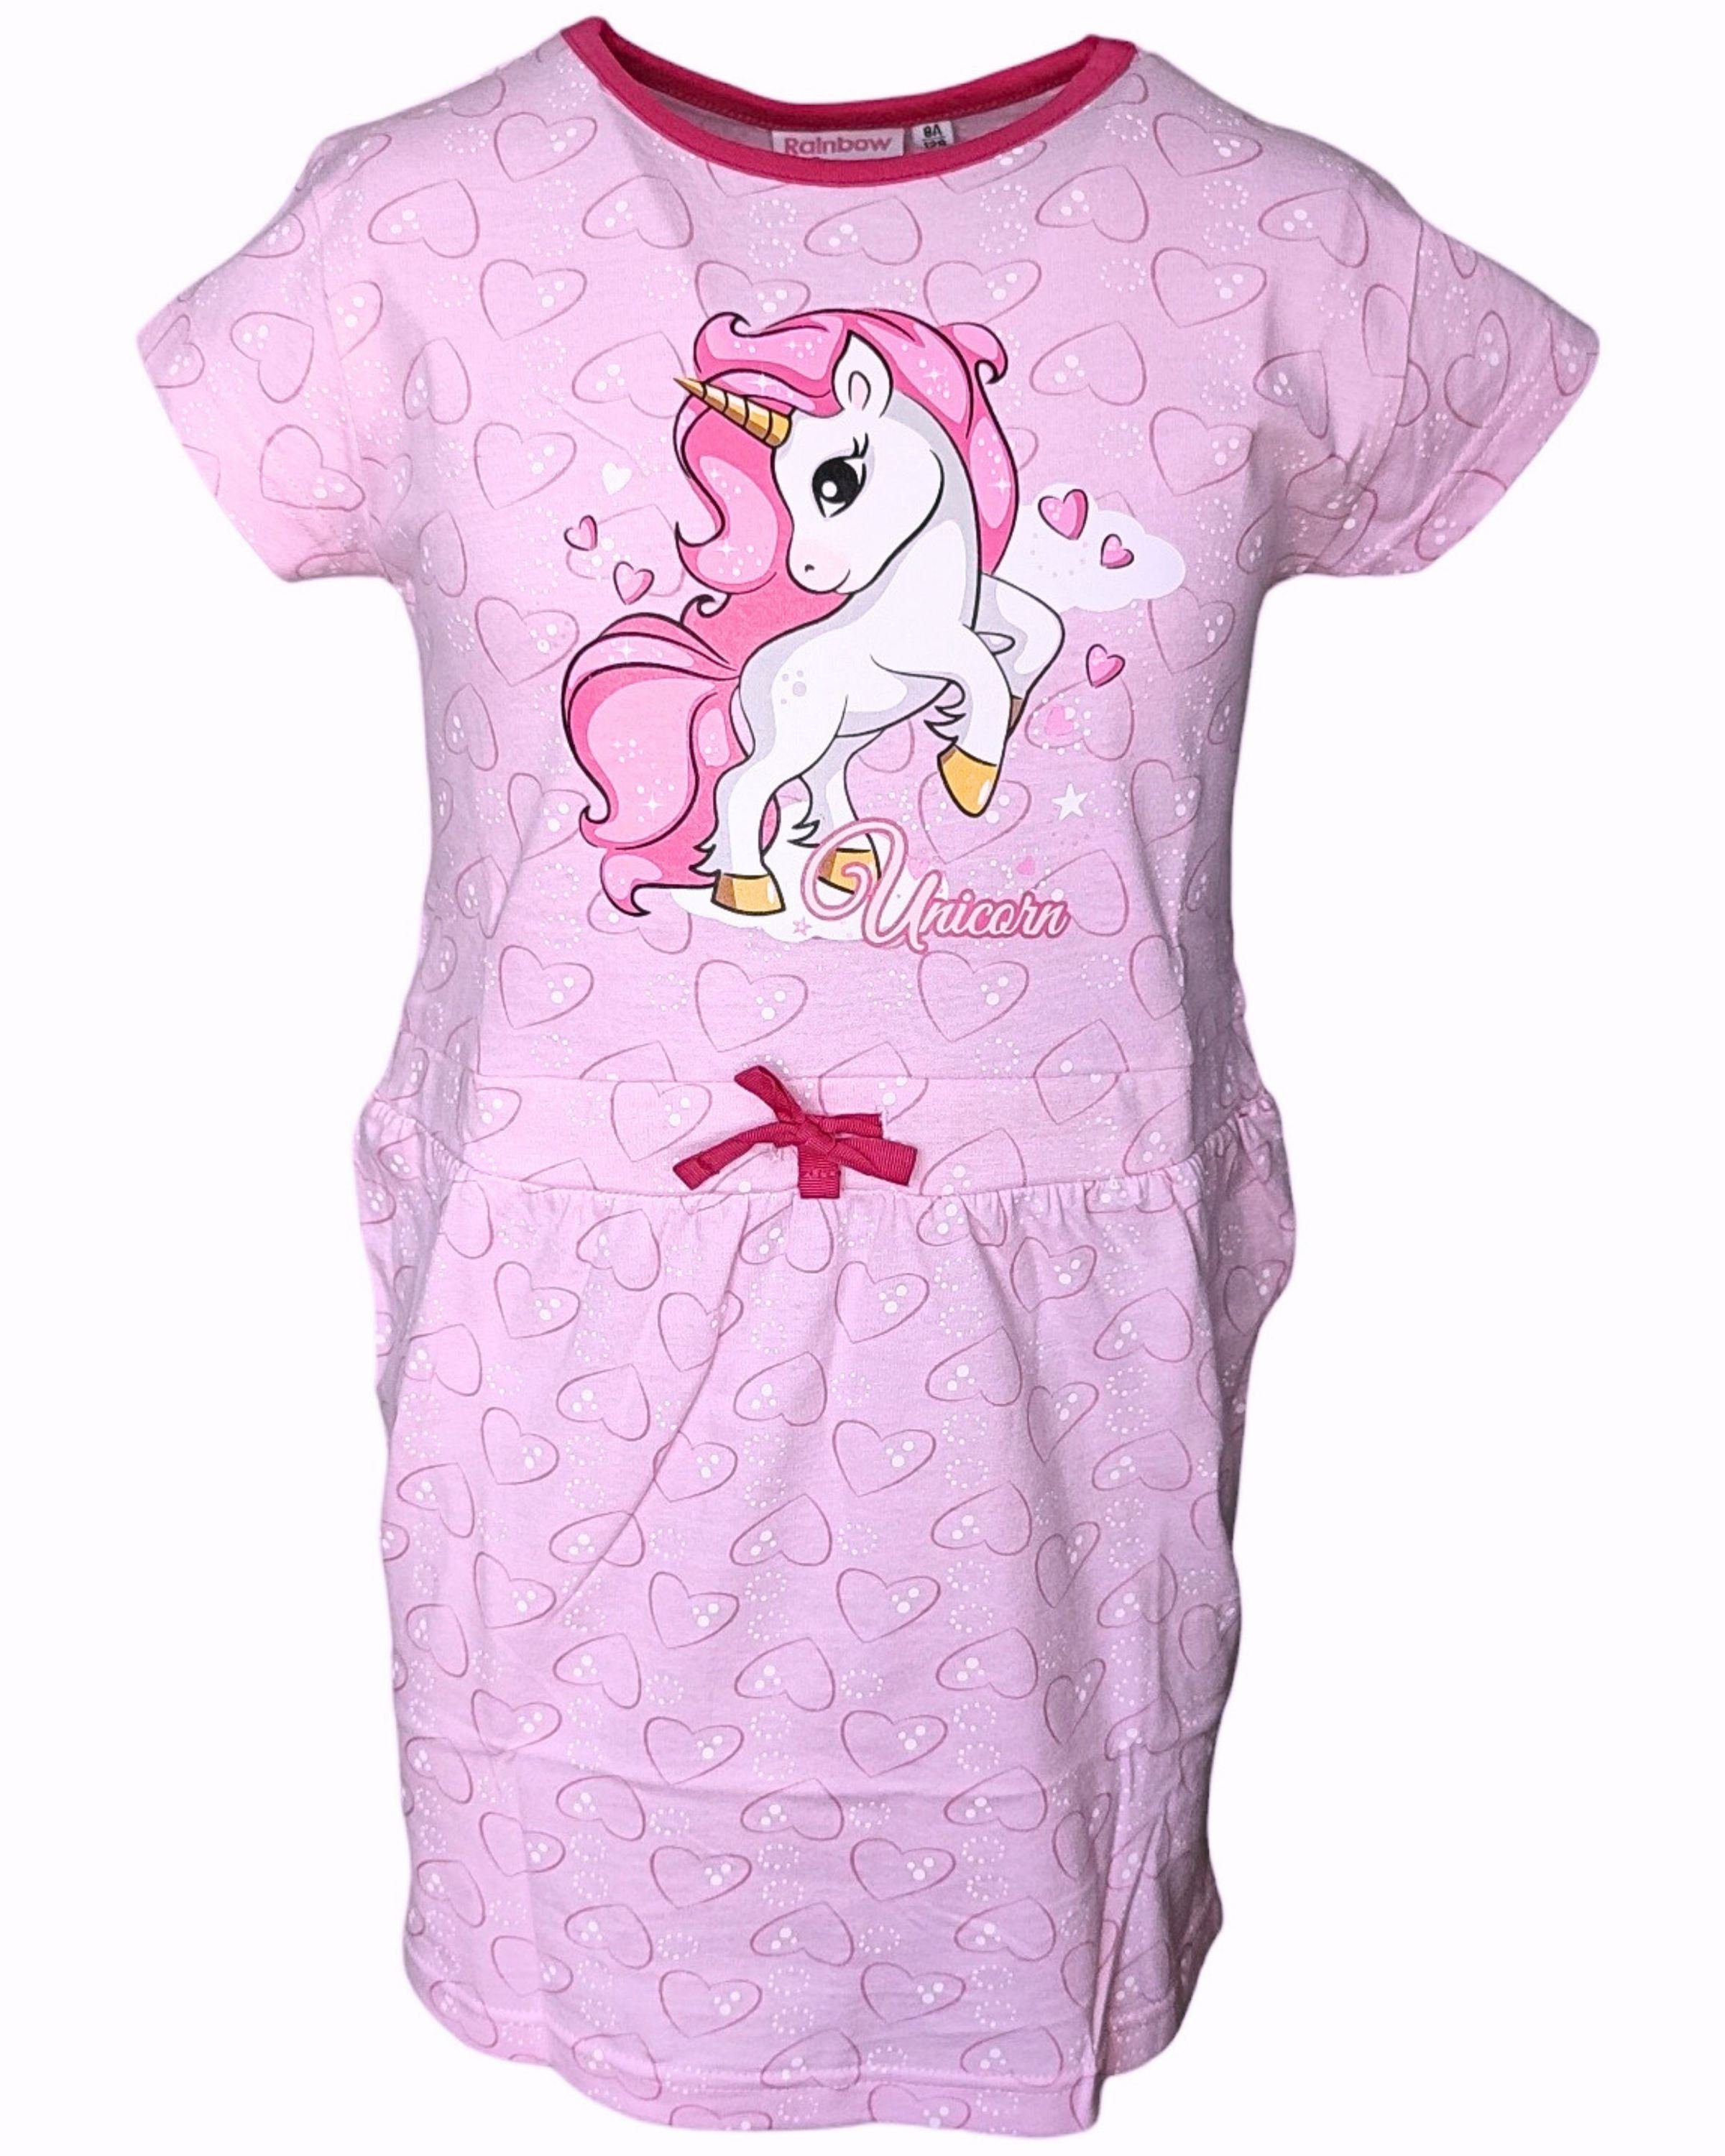 United Essentials Sommerkleid Einhorn Jerseykleid für Mädchen Gr. 98-128 cm Rosa